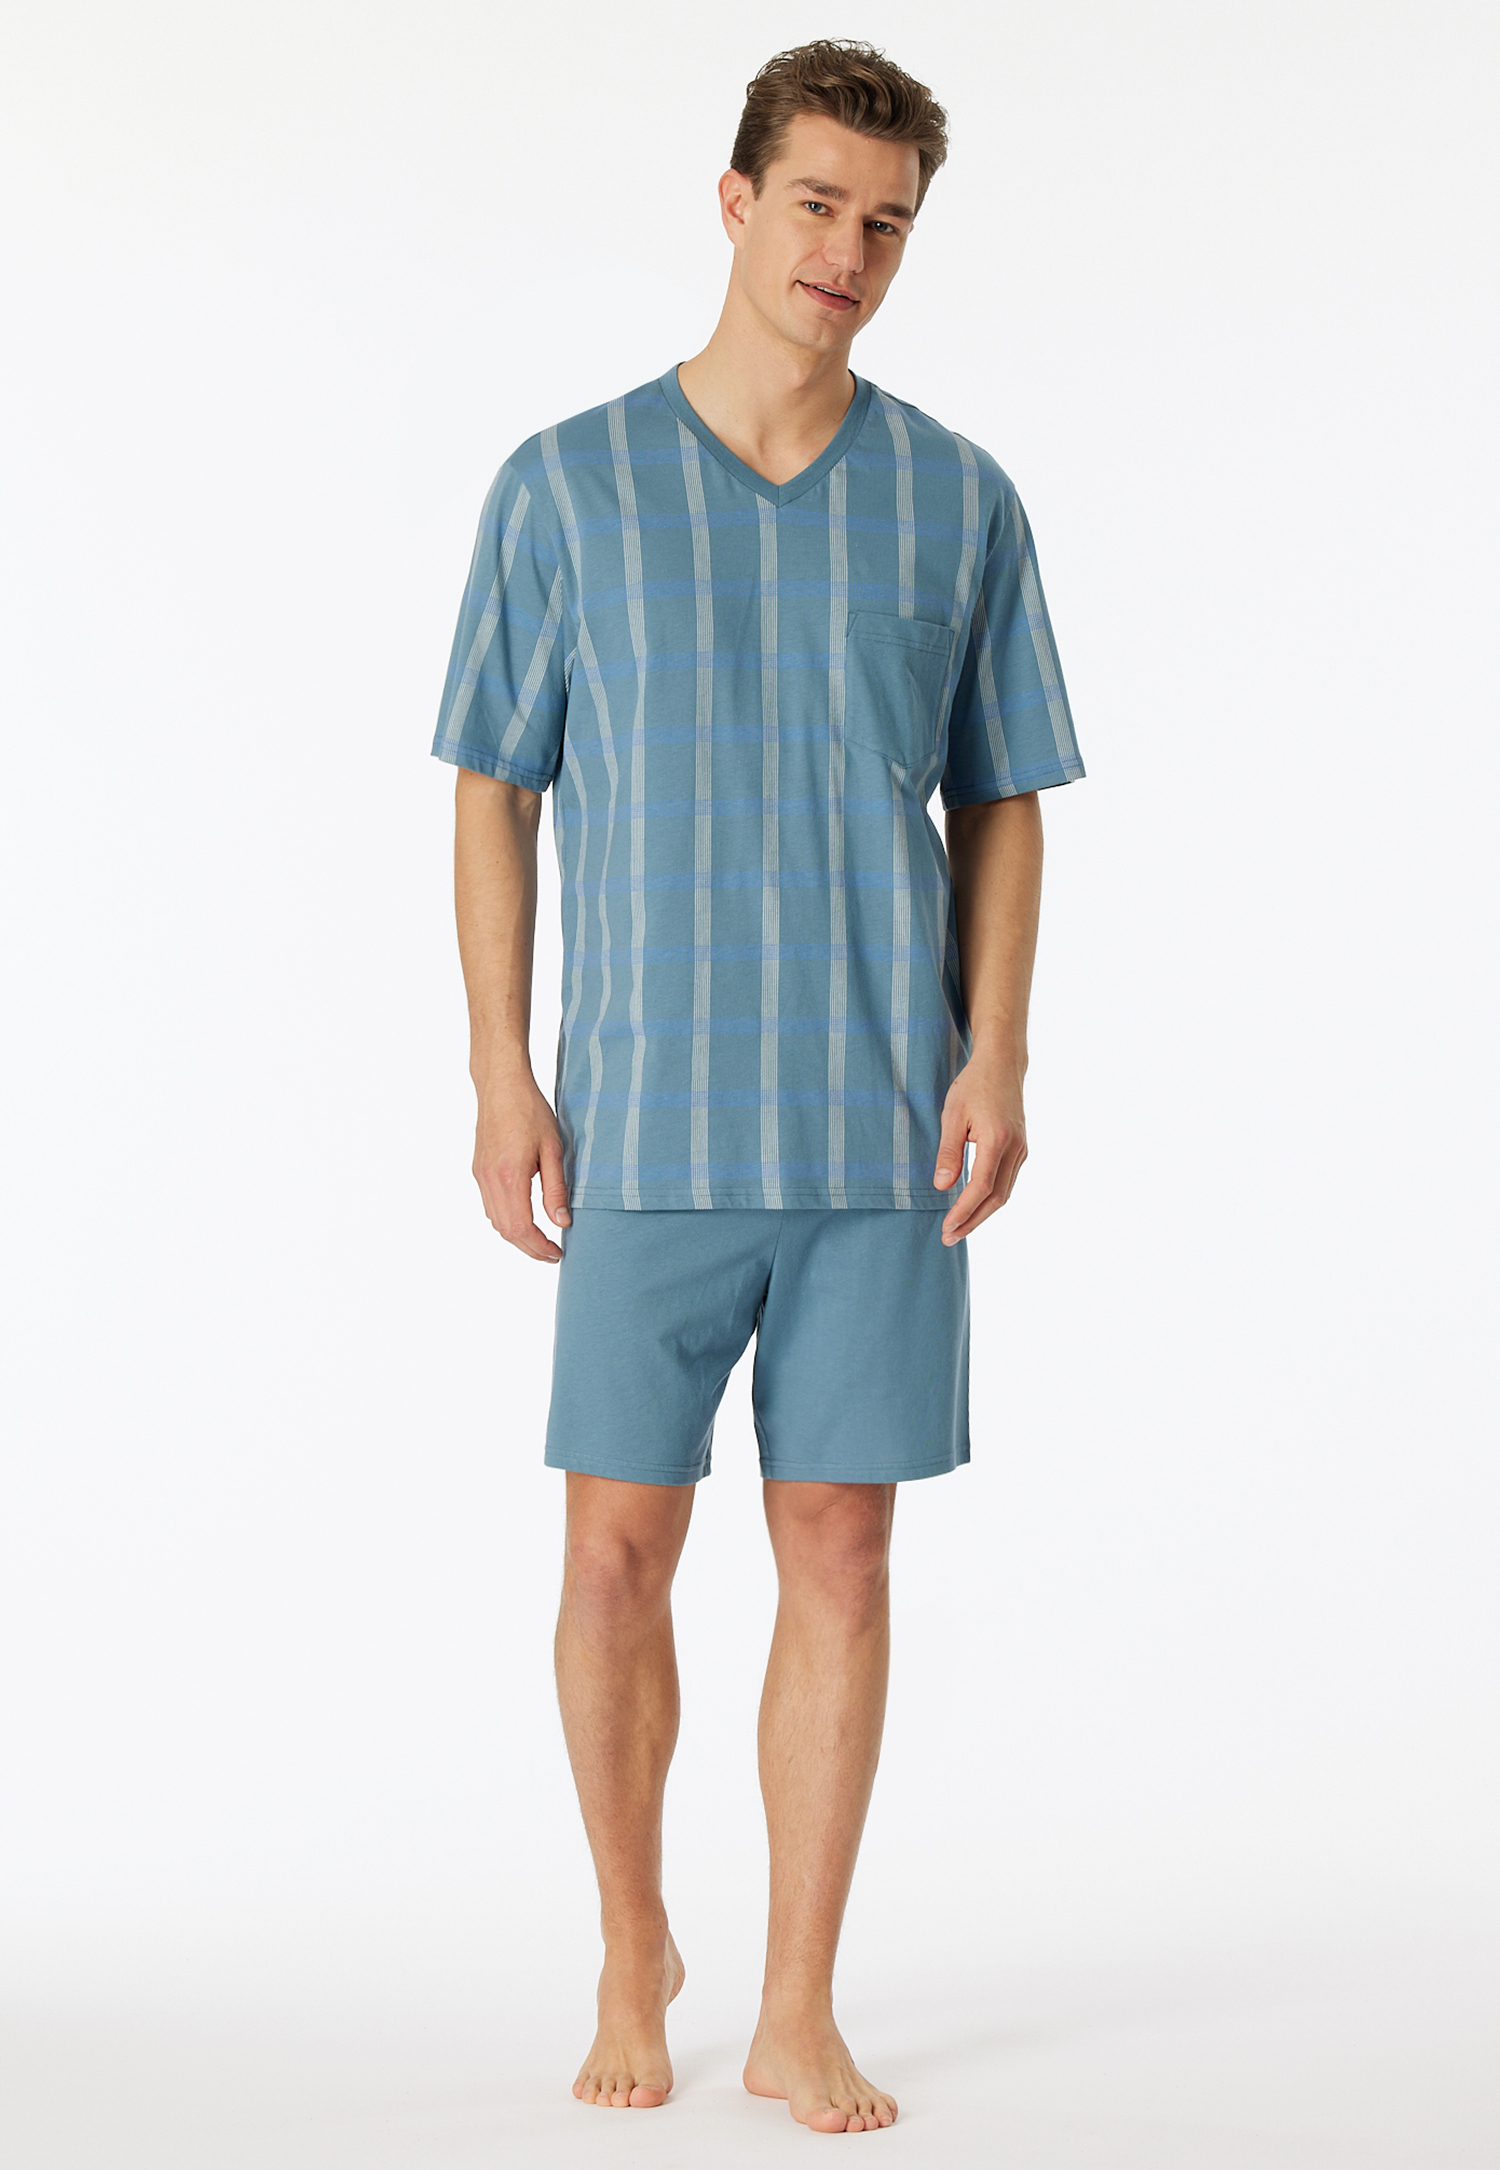 Schlafanzug kurz Organic Cotton V-Ausschnitt Brusttasche blaugrau kariert - Comfort Nightwear 52 von Schiesser